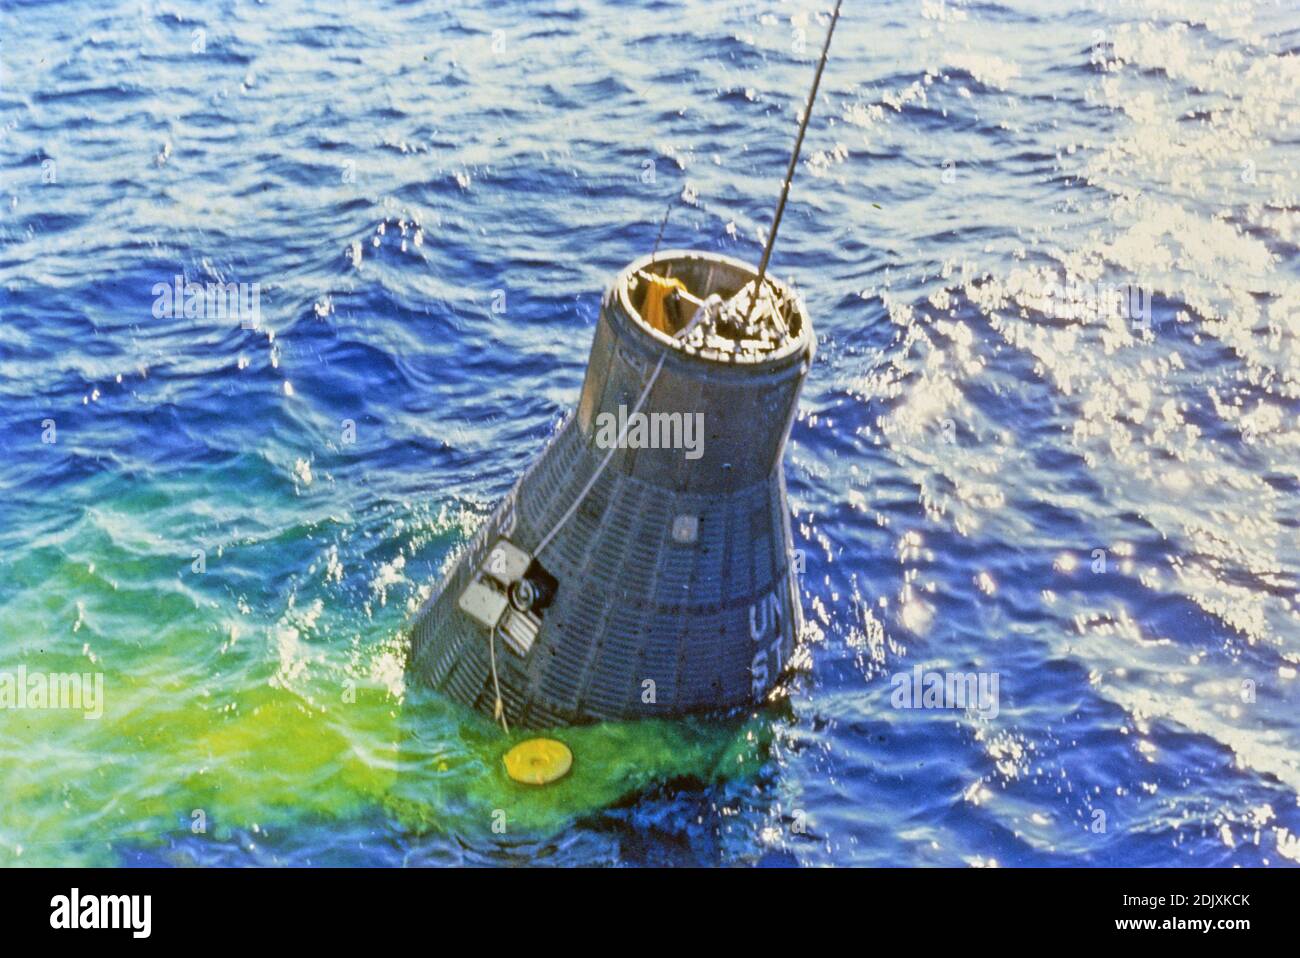 Die Mercury-Atlas 6 'Friendship 7' Raumsonde wird nach der drei-Orbit-Weltraummission von Astronaut John H. Glenn Jr. am 20. Februar 1962 aus dem Atlantik geborgen. In dieser Ansicht befindet sich die Kapsel noch im Wasser, mit Bergekabel verbunden Foto der NASA über CNP/ABACAPRESS.COM Stockfoto